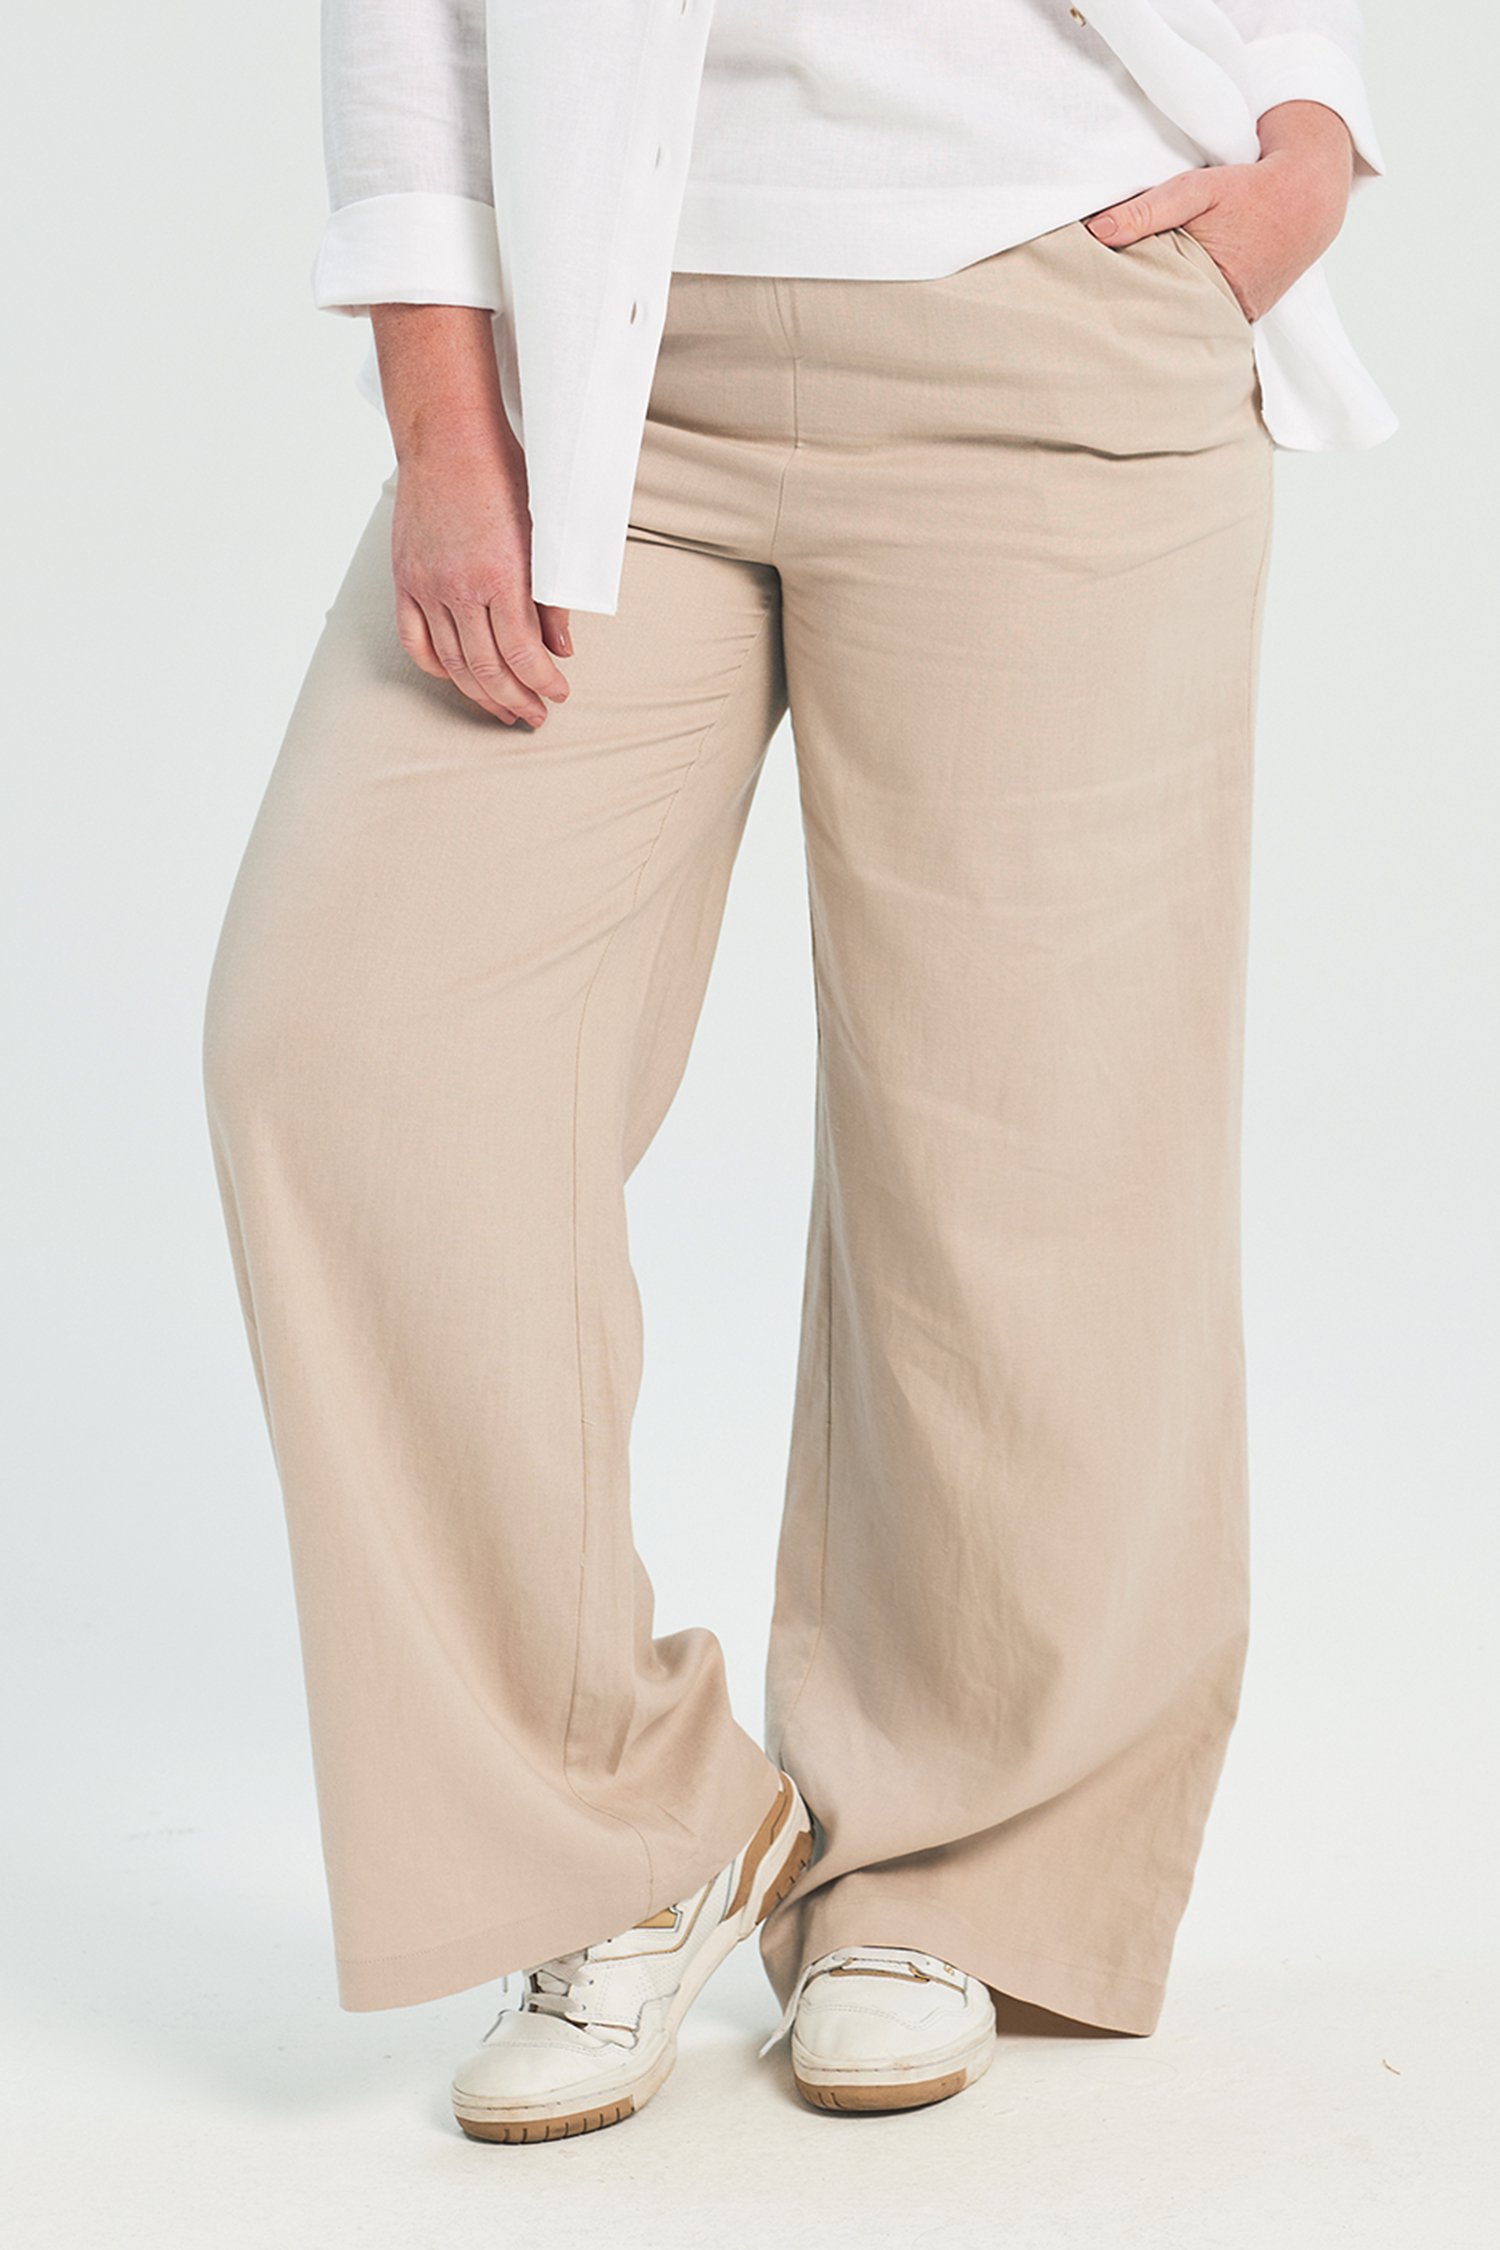 Pantalon en lin beige clair 	 de Liberty Island pour Femmes